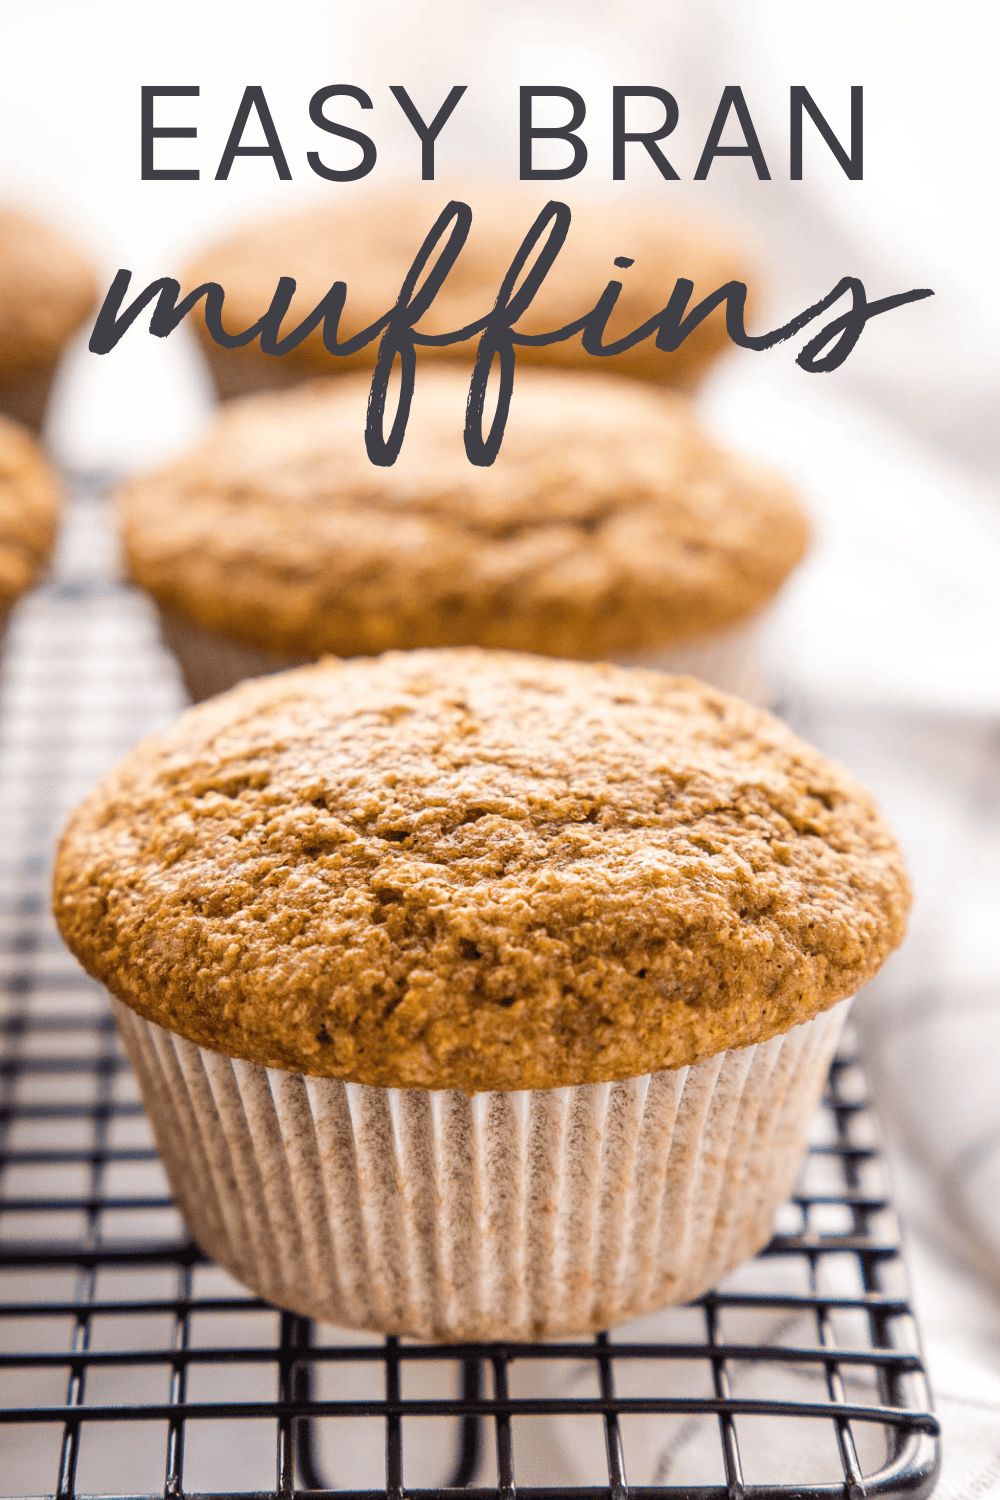 bran muffins recipe